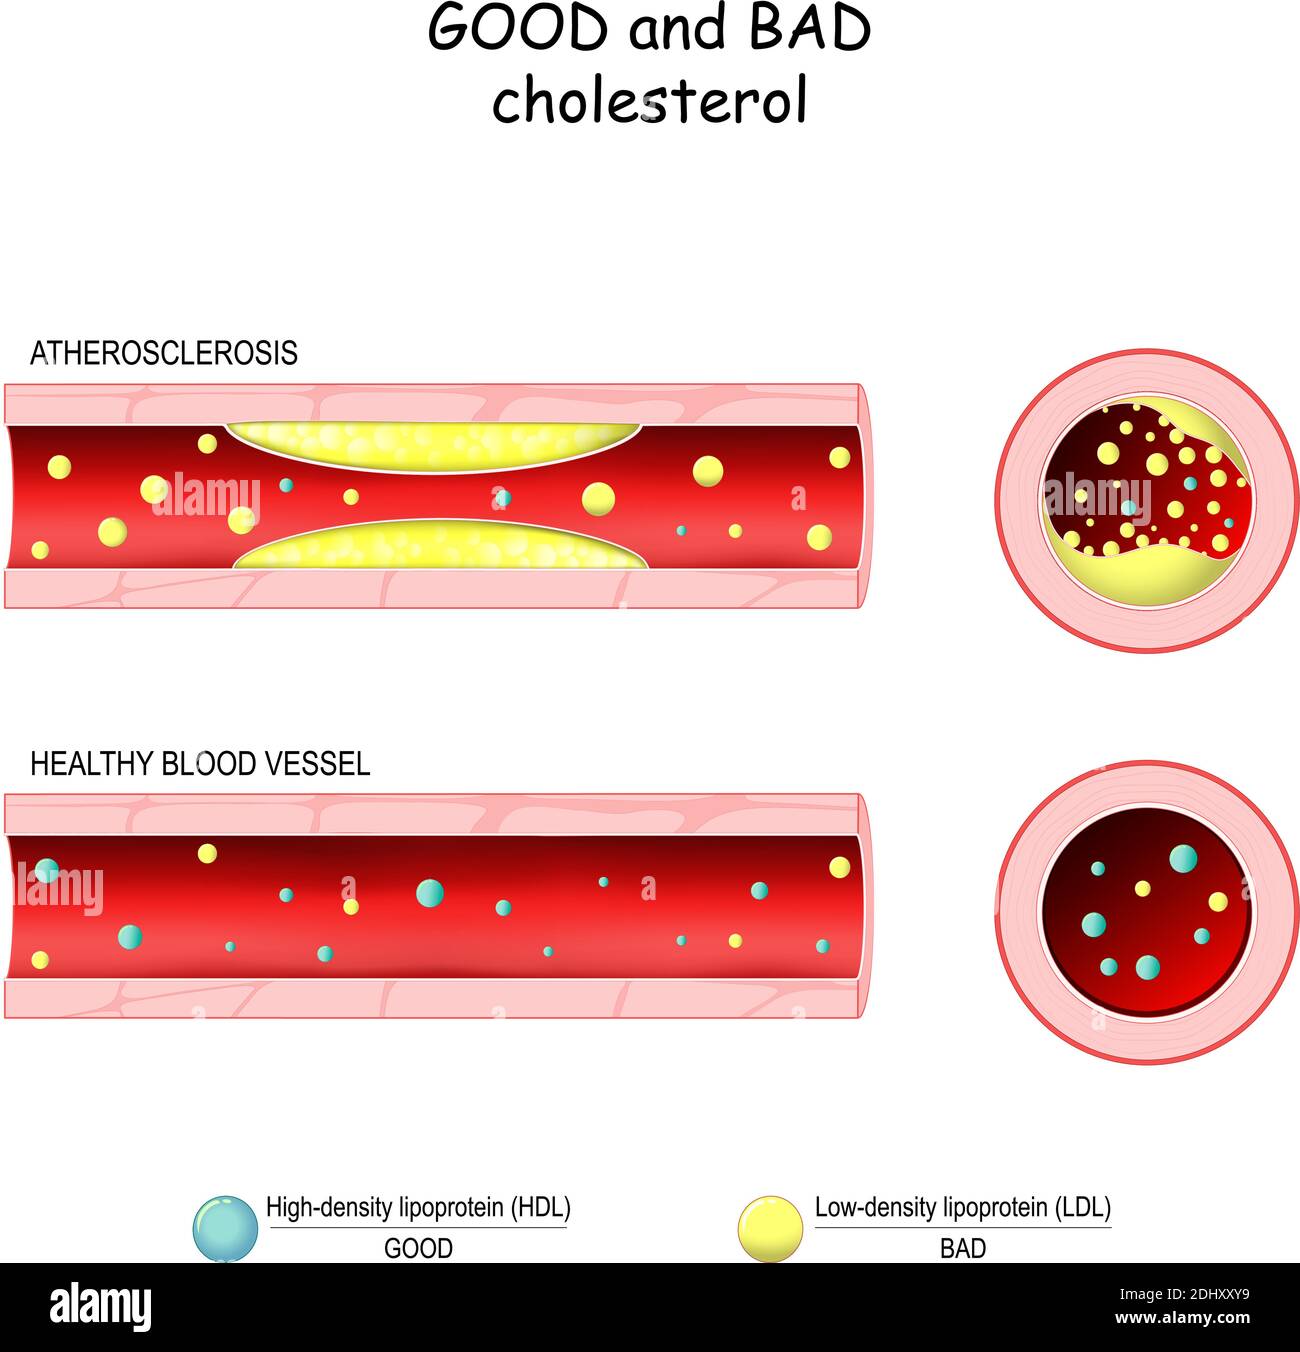 ترسب الكوليسترول الضار بالأوعية الدموية